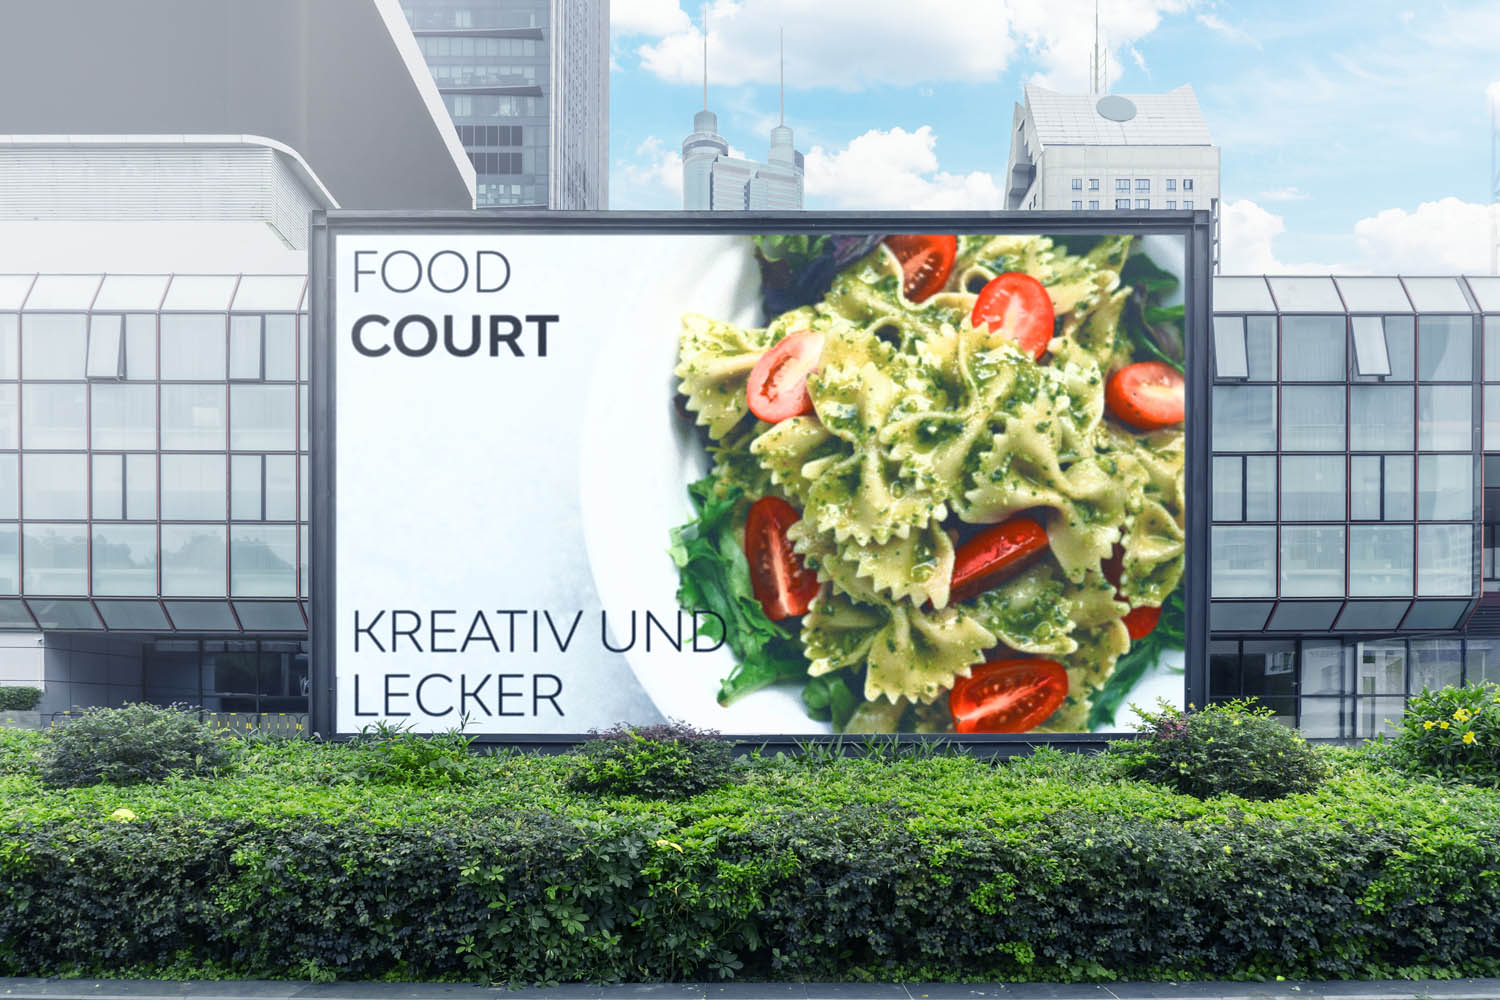 In einer Stadt steht an einer Hecke eine Videowall mit Werbung für Pasta